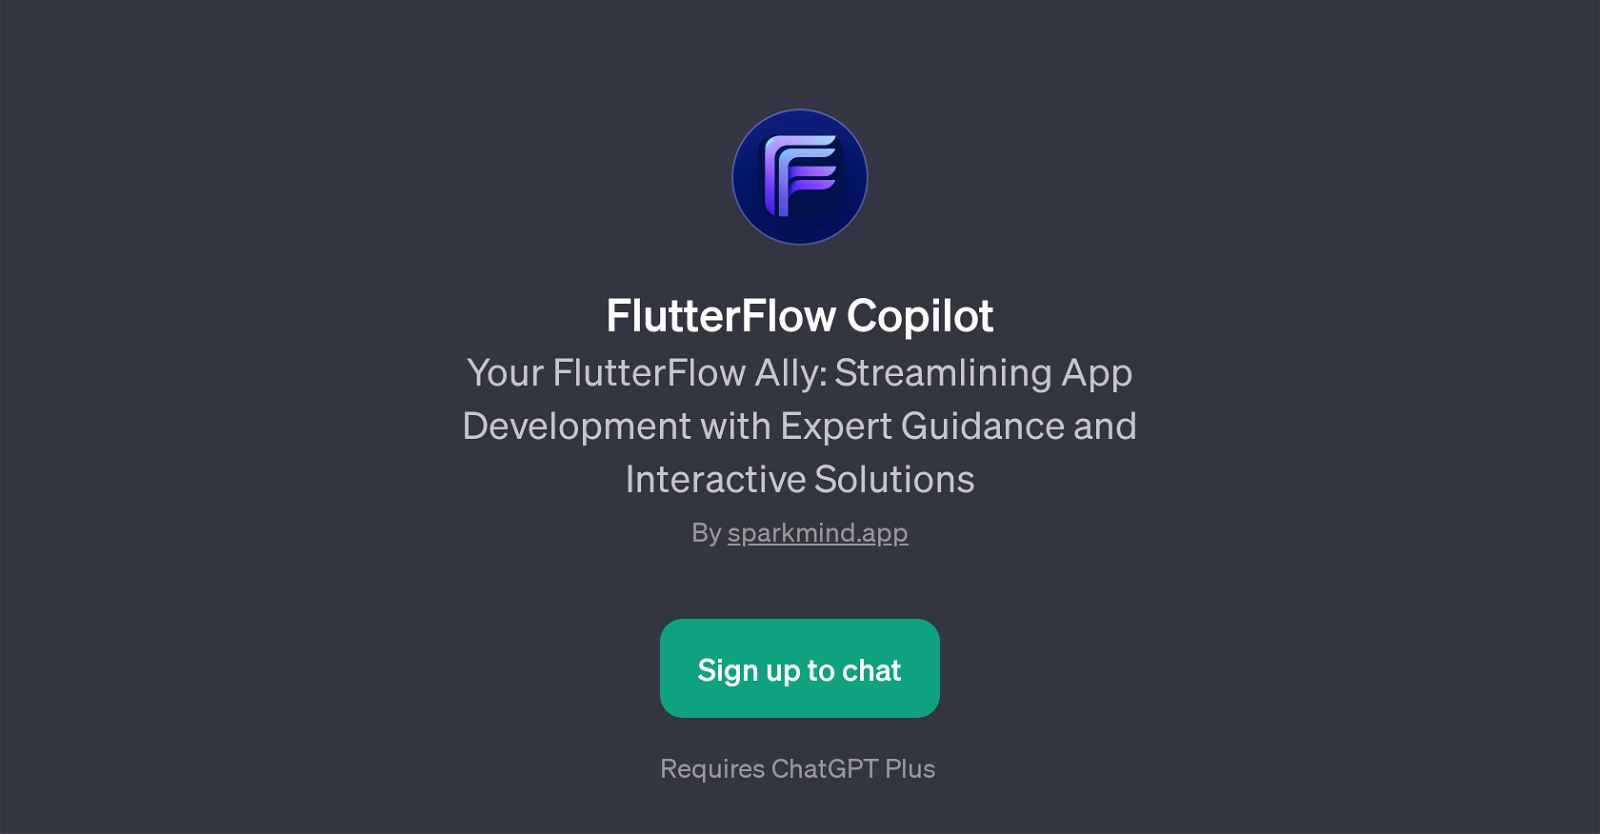 FlutterFlow Copilot website